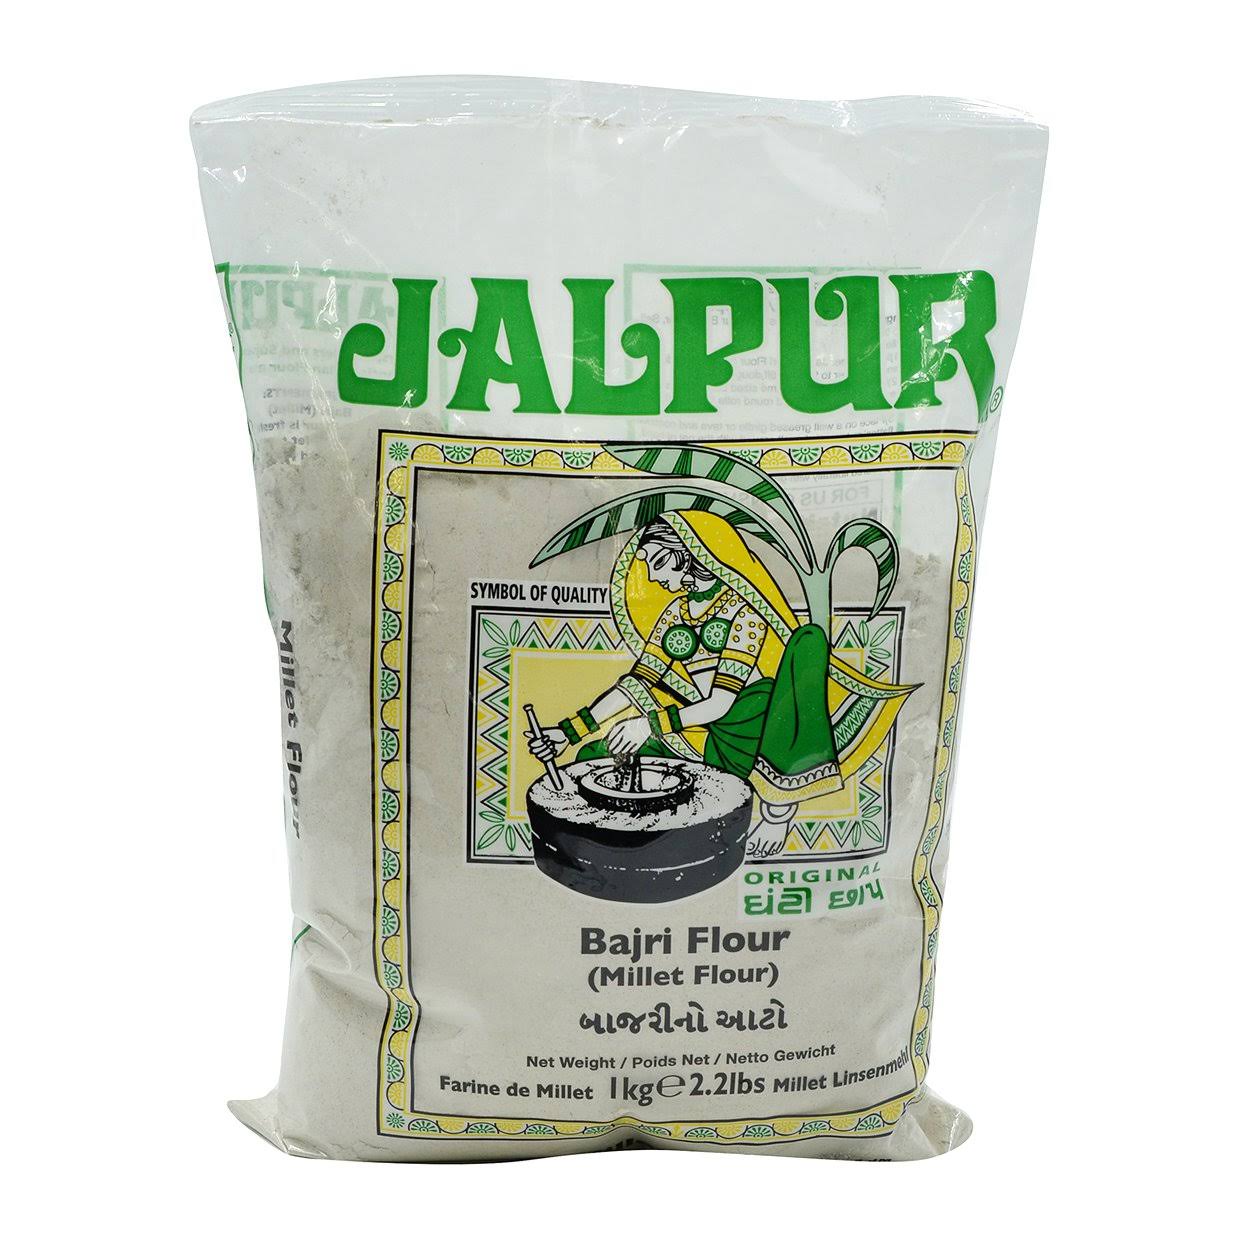 Jalpur Bajri (Millet) Flour 1 kg